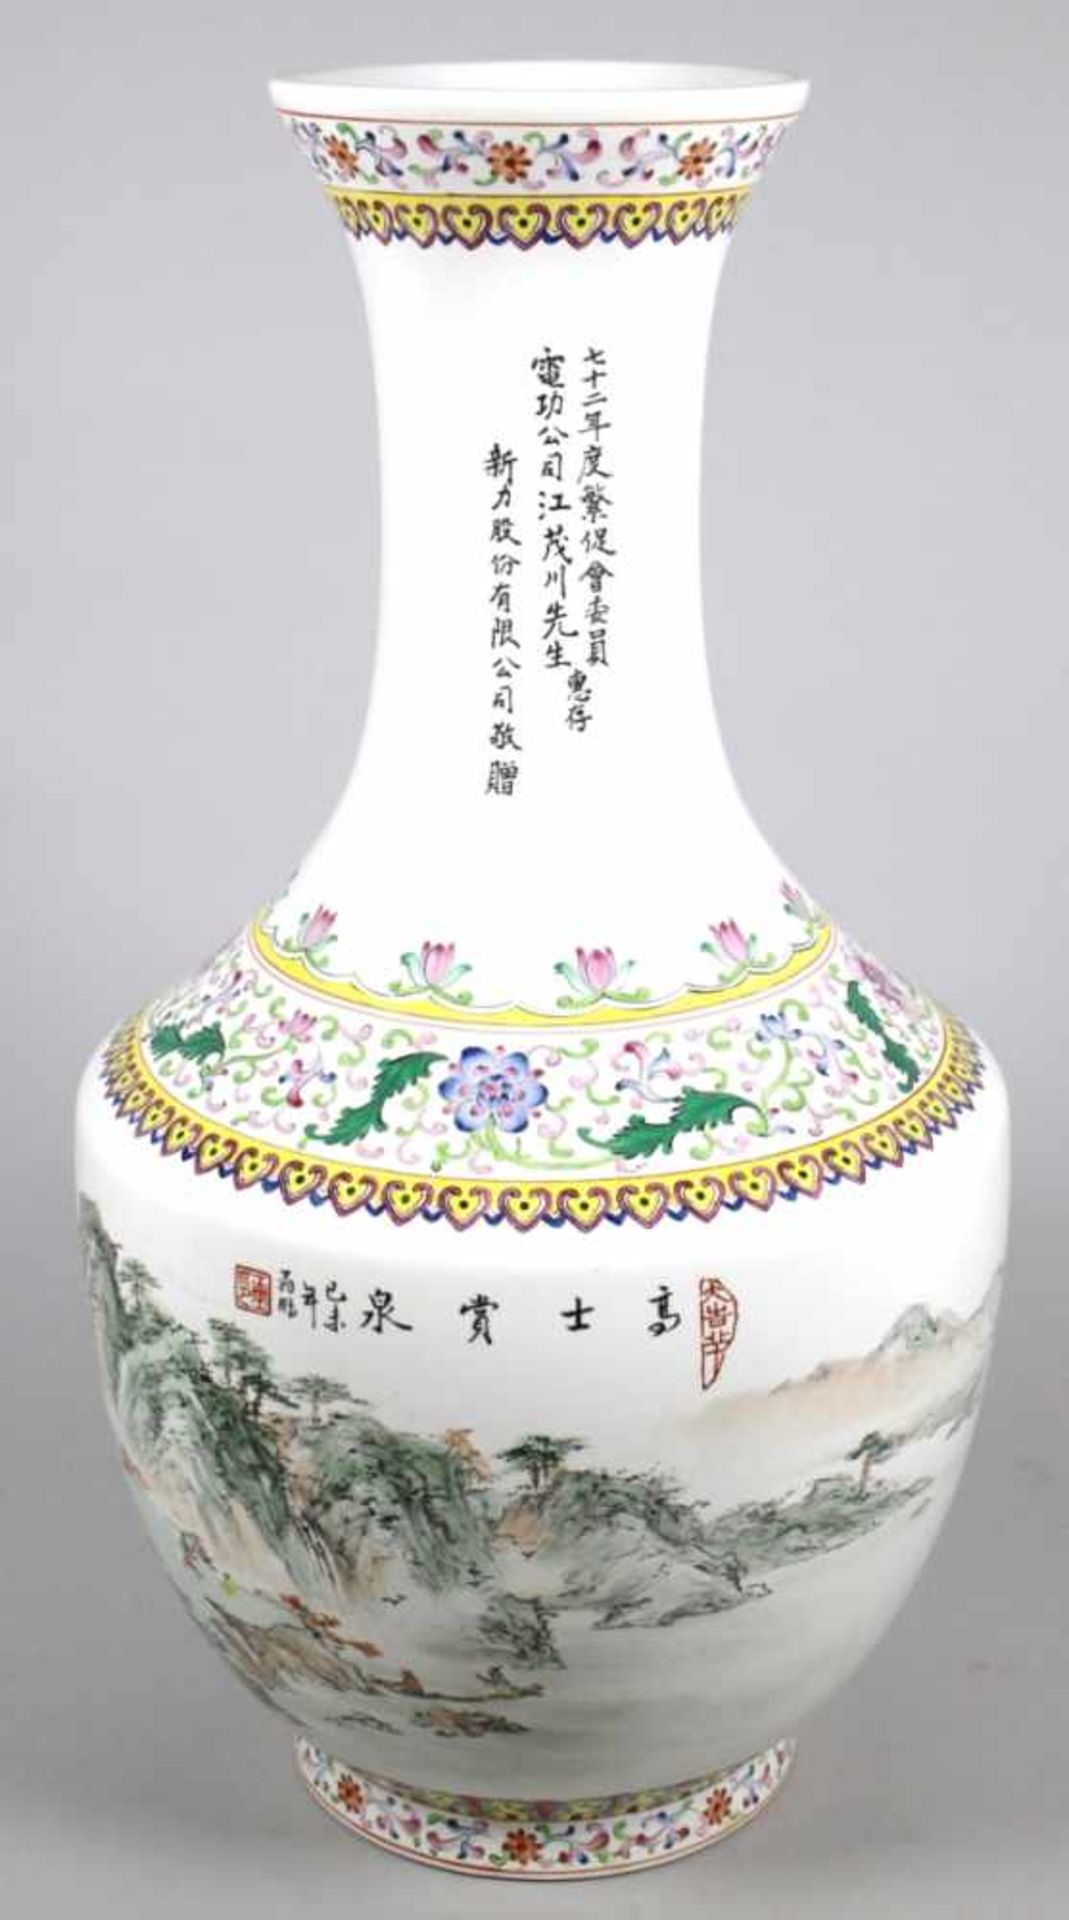 Keramik-Ziervase, China, 2. Hälfte 20. Jh., runder Stand, bauchiger Korpus,< - Bild 3 aus 4